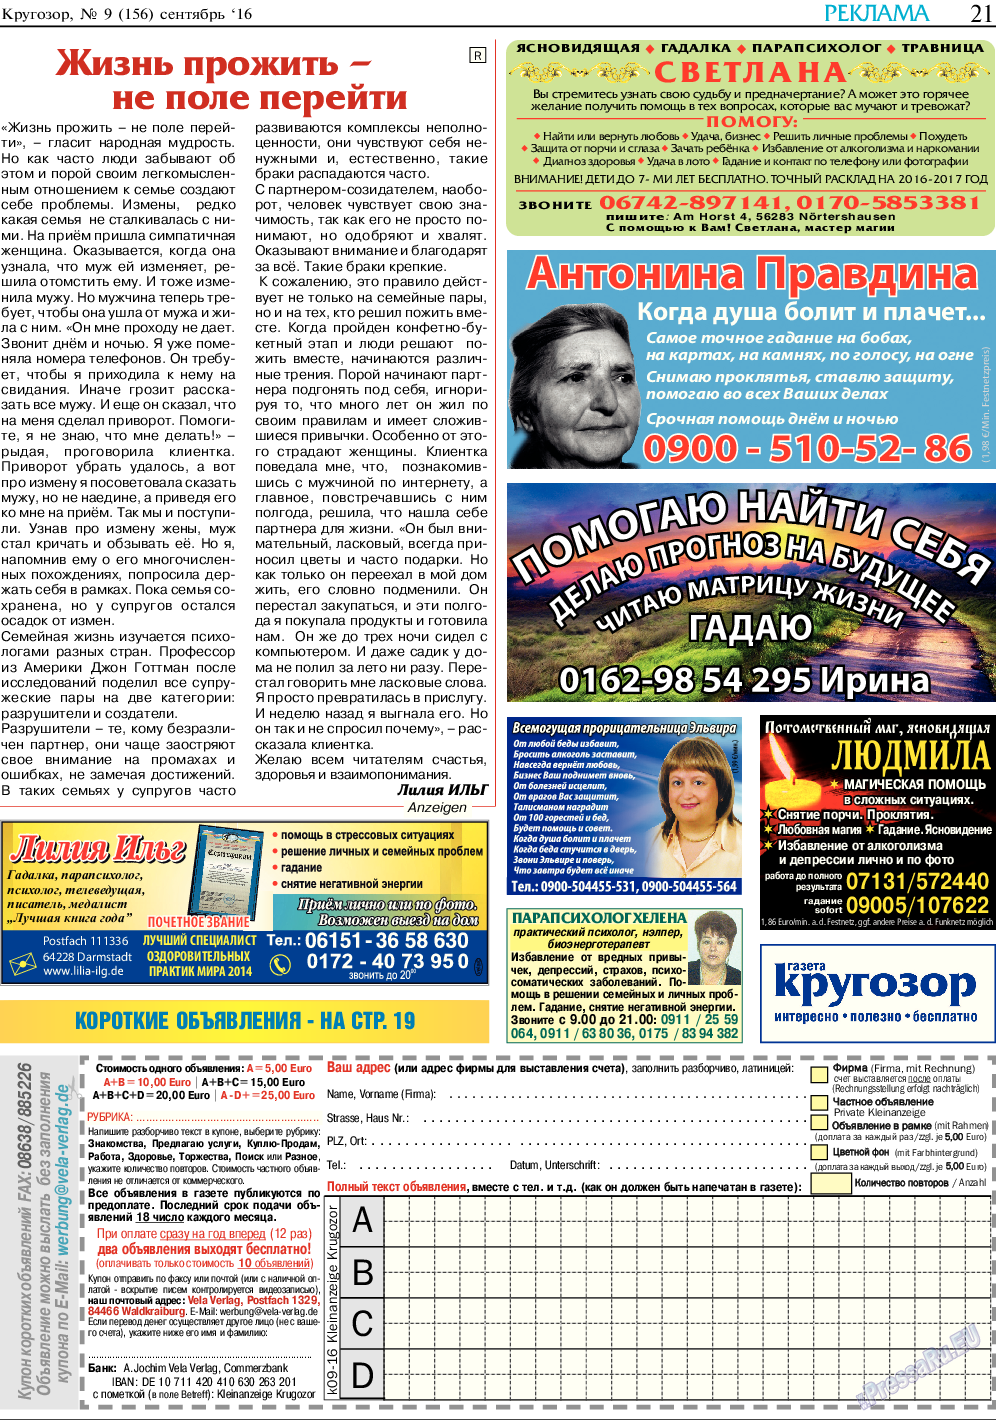 Кругозор, газета. 2016 №9 стр.21